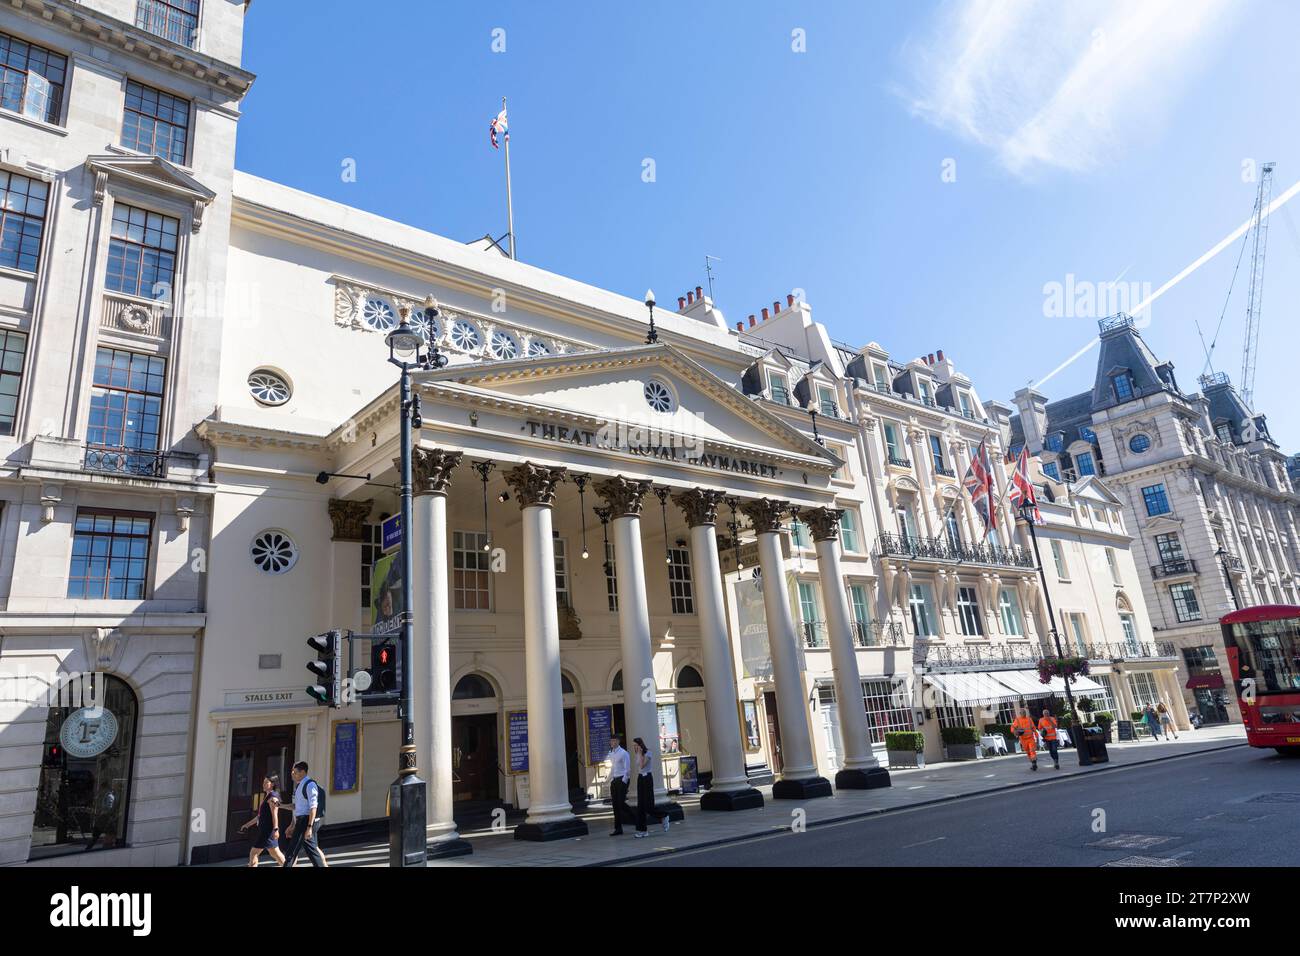 Théâtre Royal Haymarket ou Haymarket Theatre, bâtiment classé Grade 1 dans le West End de Londres, vue sur la façade du théâtre, Londres, Angleterre, Royaume-Uni Banque D'Images